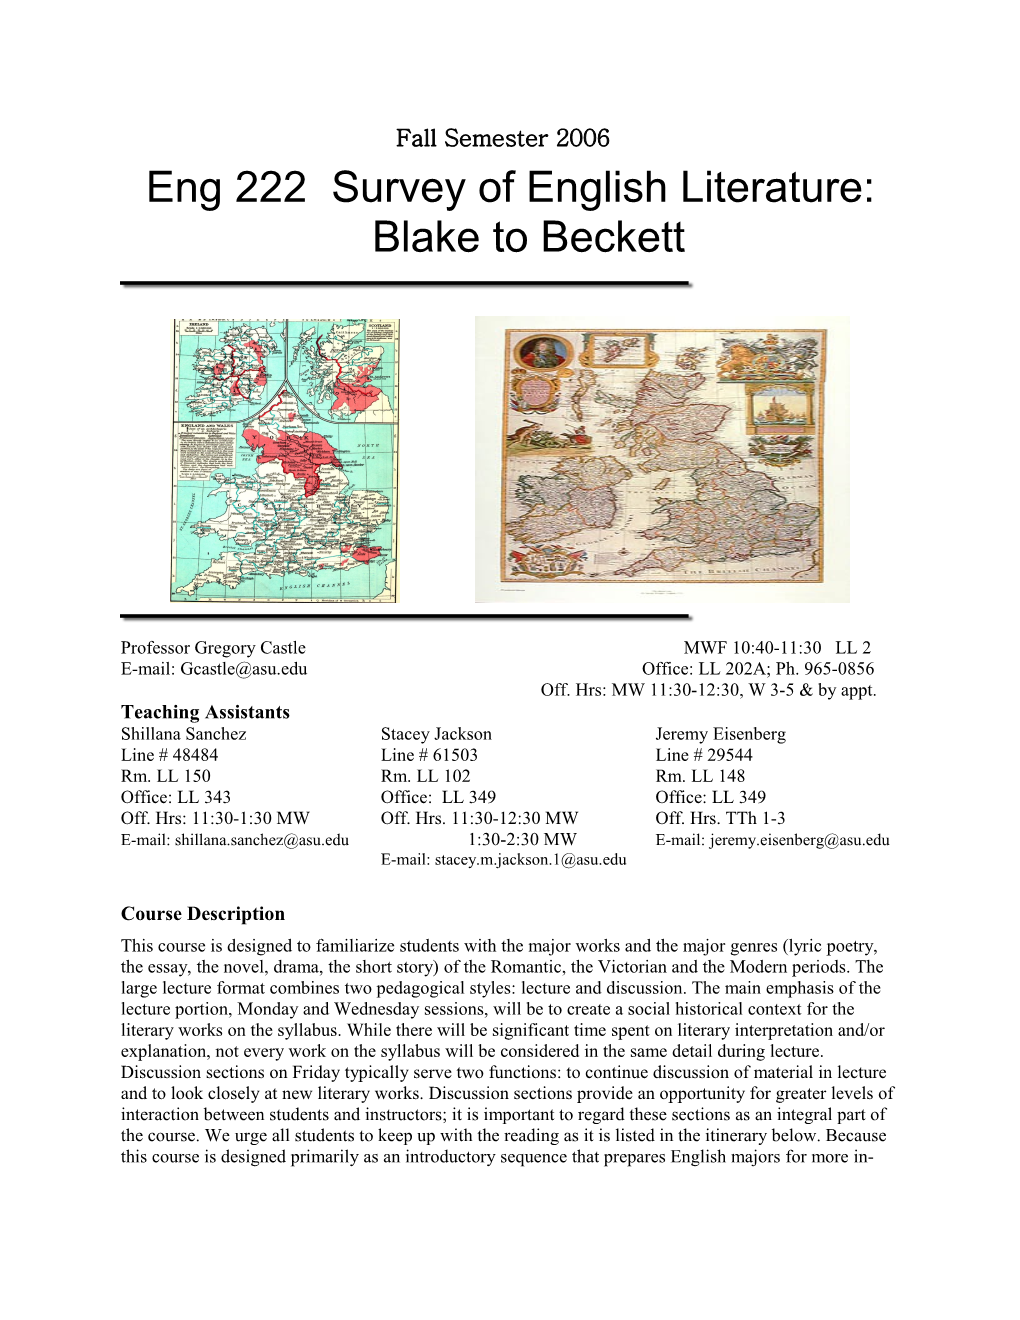 Eng 222 Survey of English Literature: Blake to Beckett